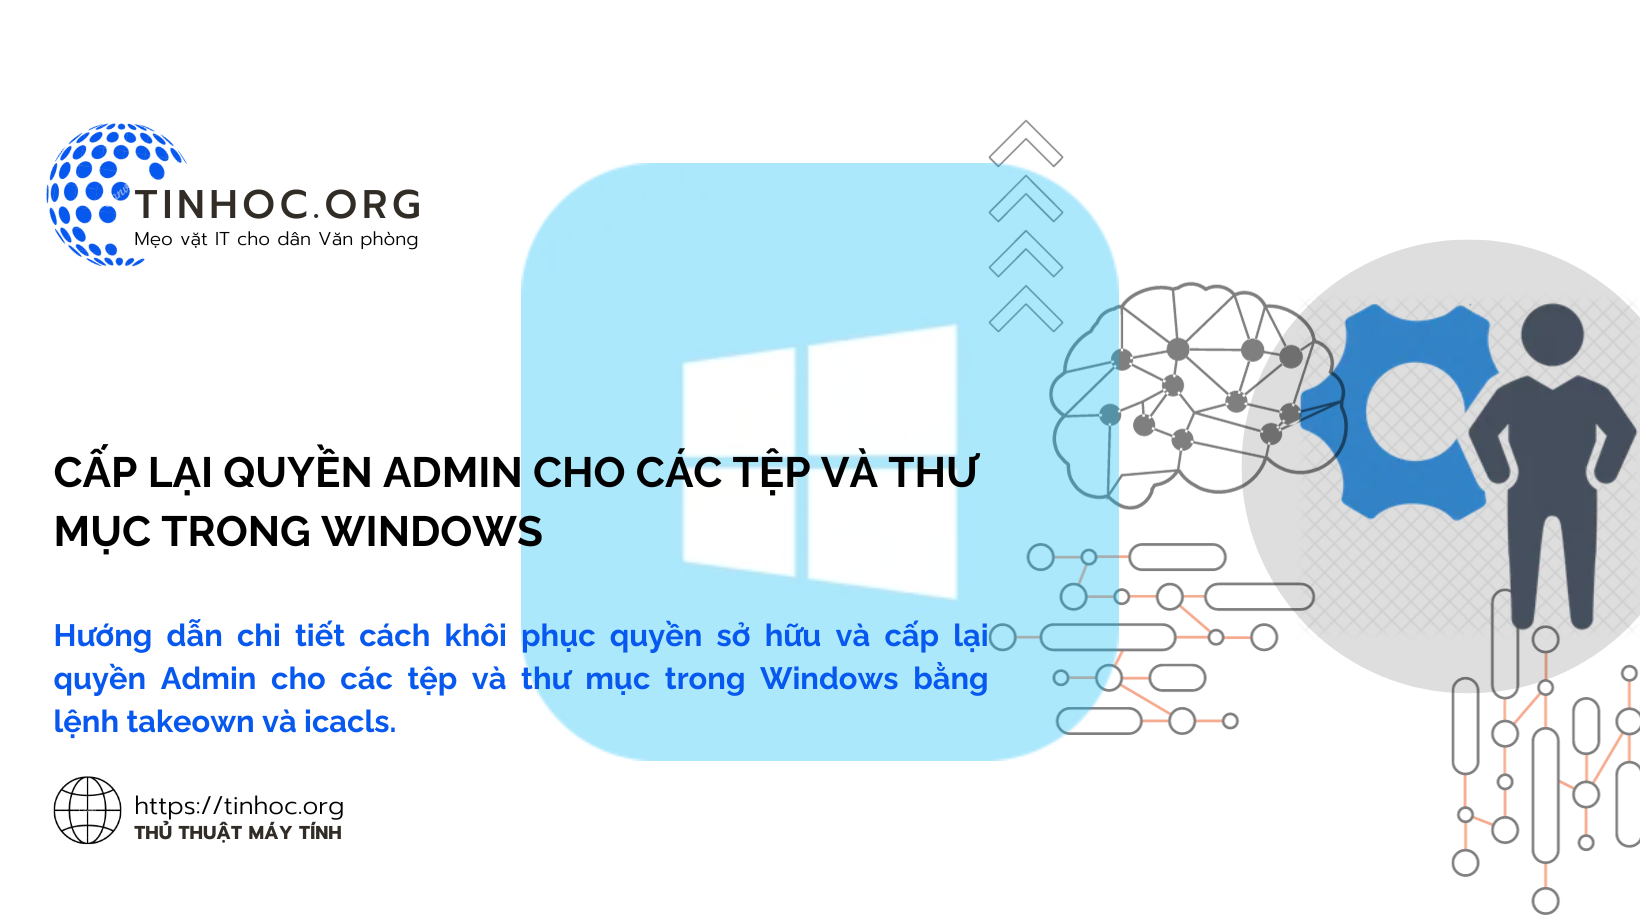 Cấp lại quyền admin cho các tệp và thư mục trong Windows